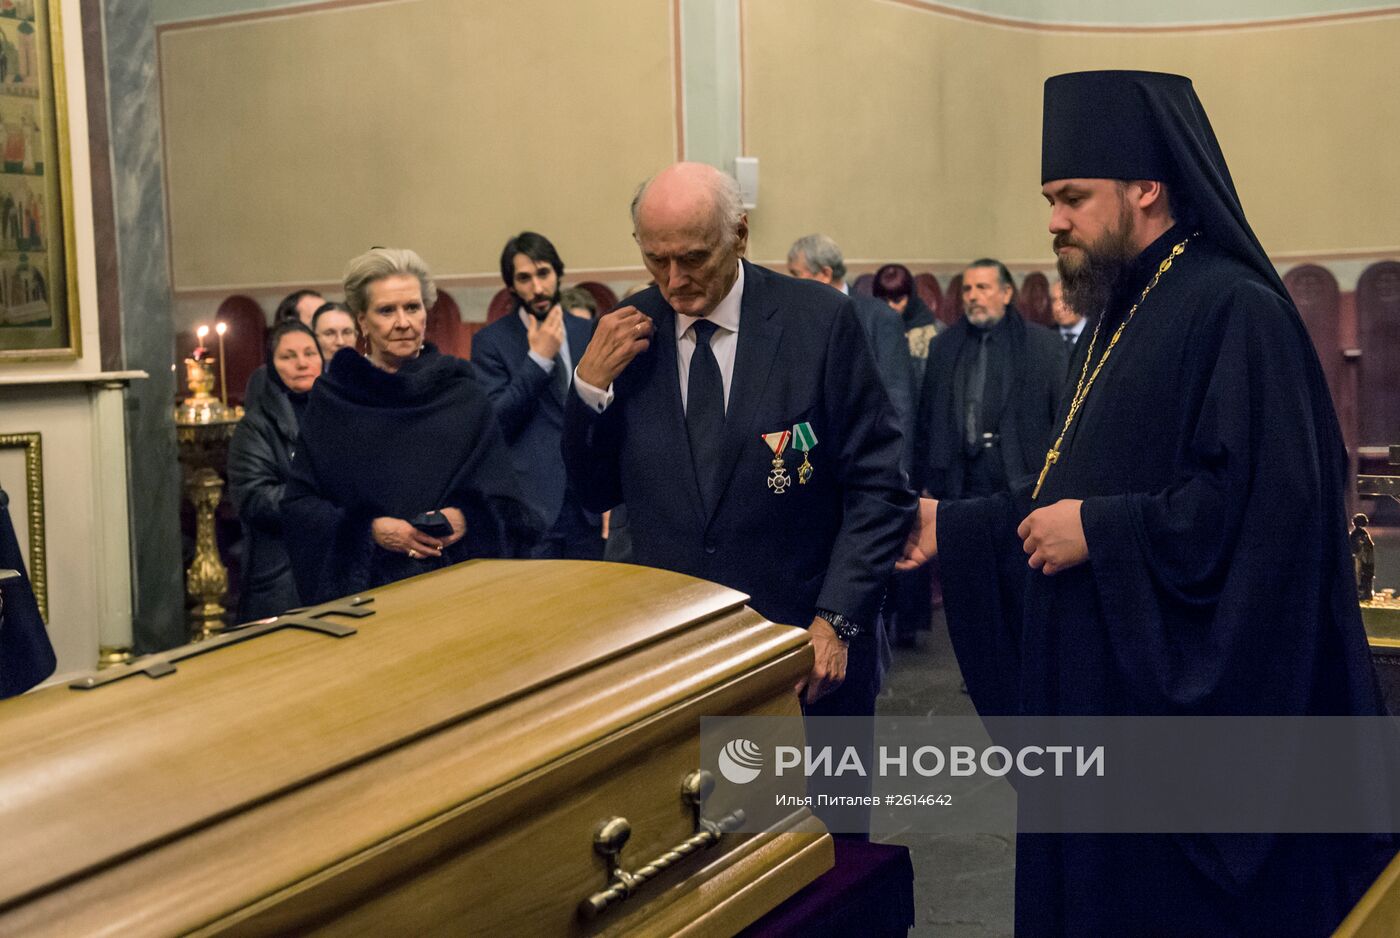 Прах великого князя Николая Романова (младшего) и его супруги доставлен в Москву для перезахоронения